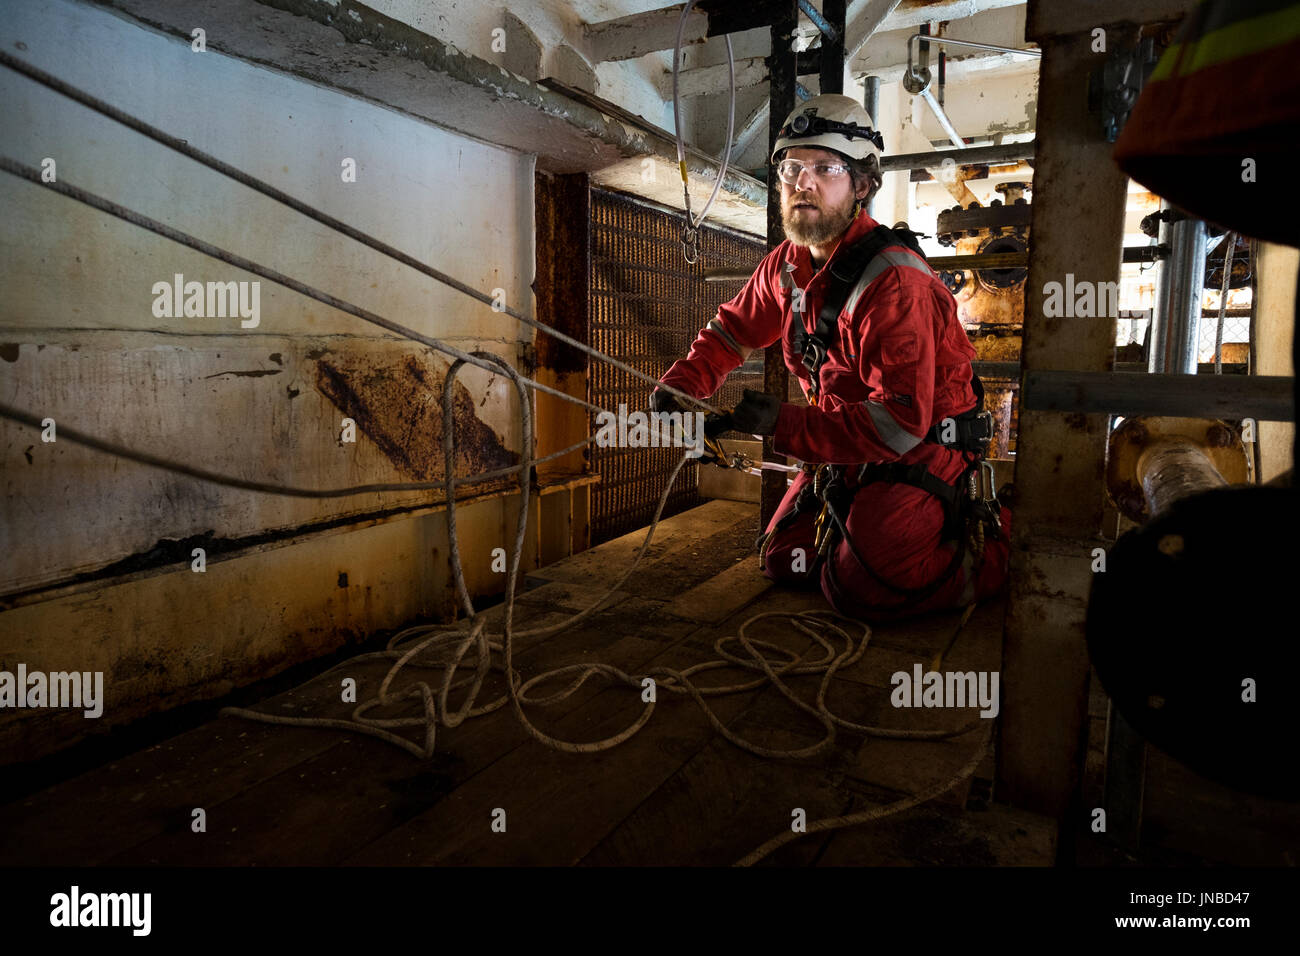 Une corde industriel technicien d'accès mise en place d'un système de transport recsue, vêtu d'une combinaison rouge. crédit : lee ramsden / alamy Banque D'Images